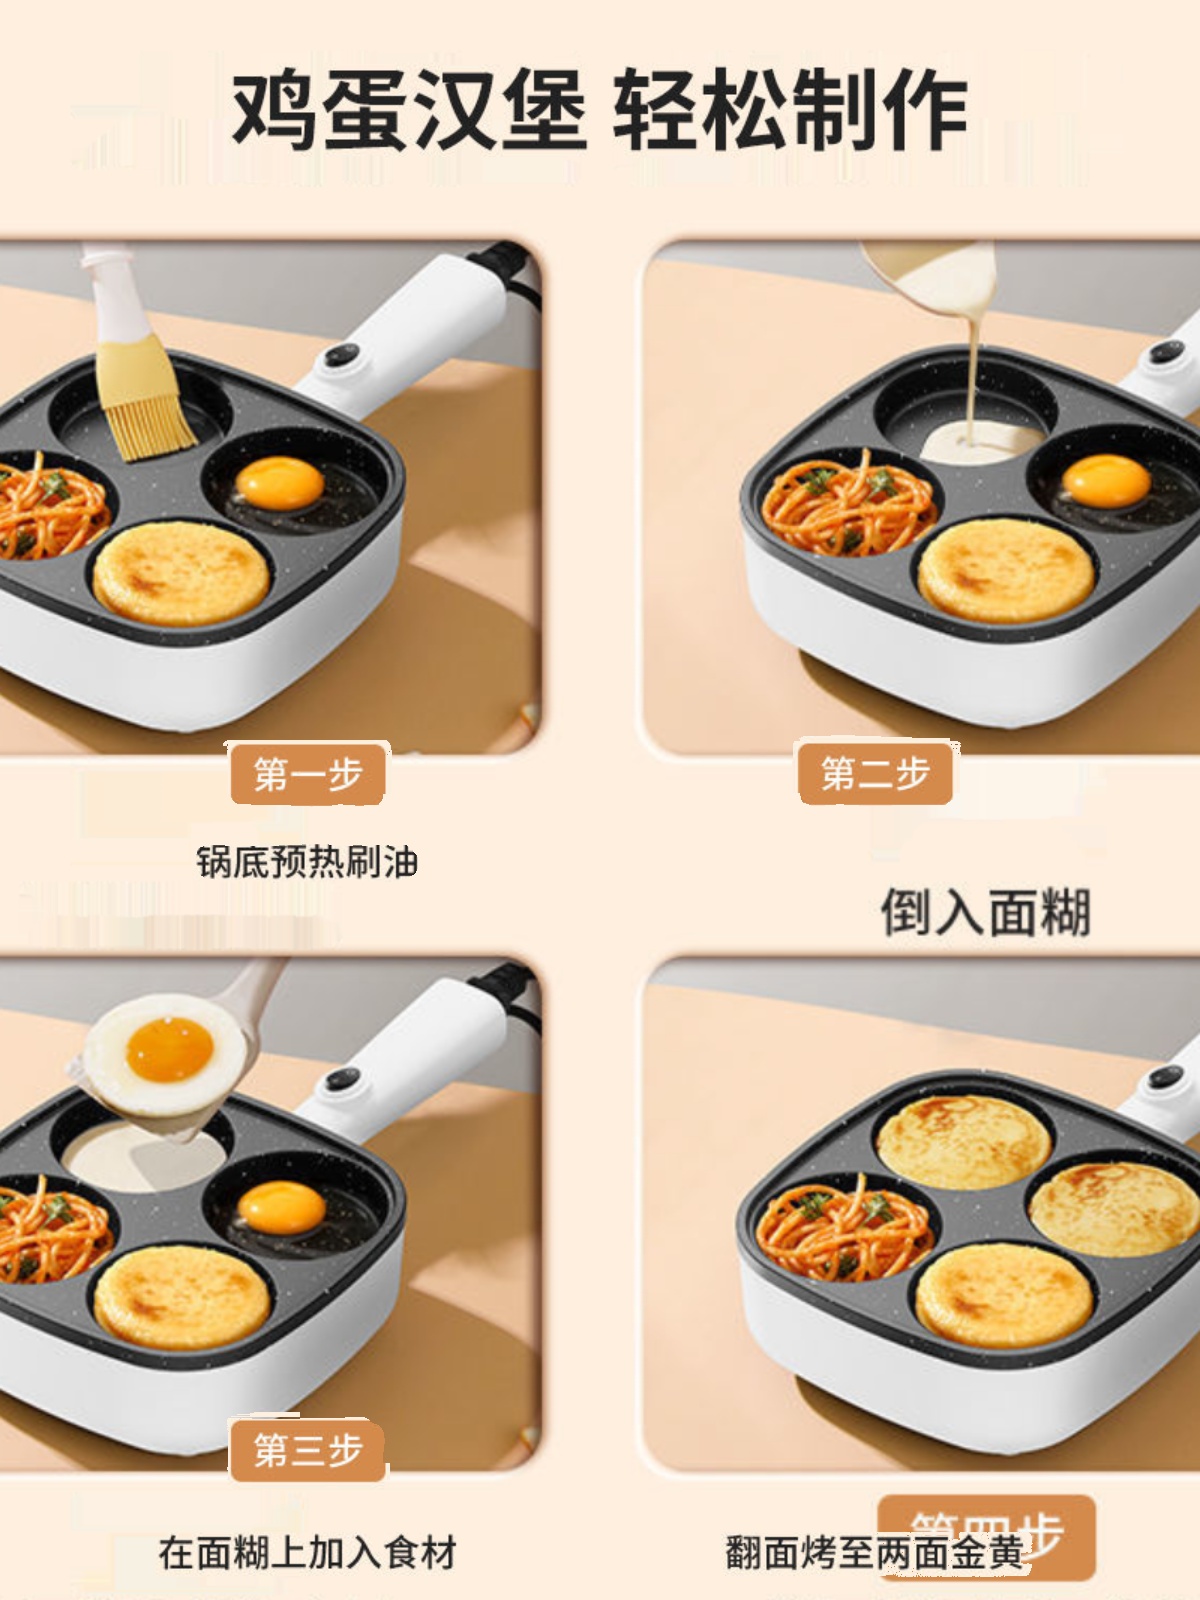 家用插电小型早餐锅荷包蛋煎蛋神器不粘蛋饺锅鸡蛋汉堡机模具四孔